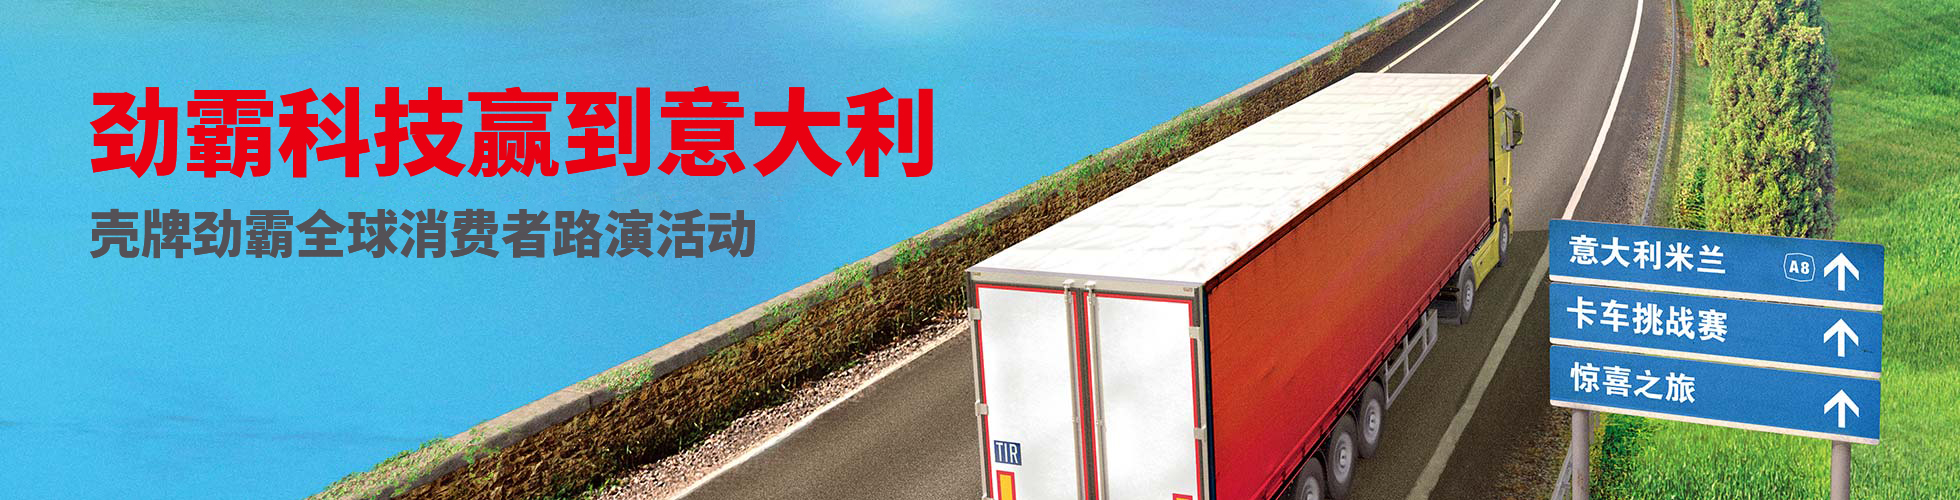 【音频图文直播】第七届寻找“最劲霸卡车司机”广州启动仪式